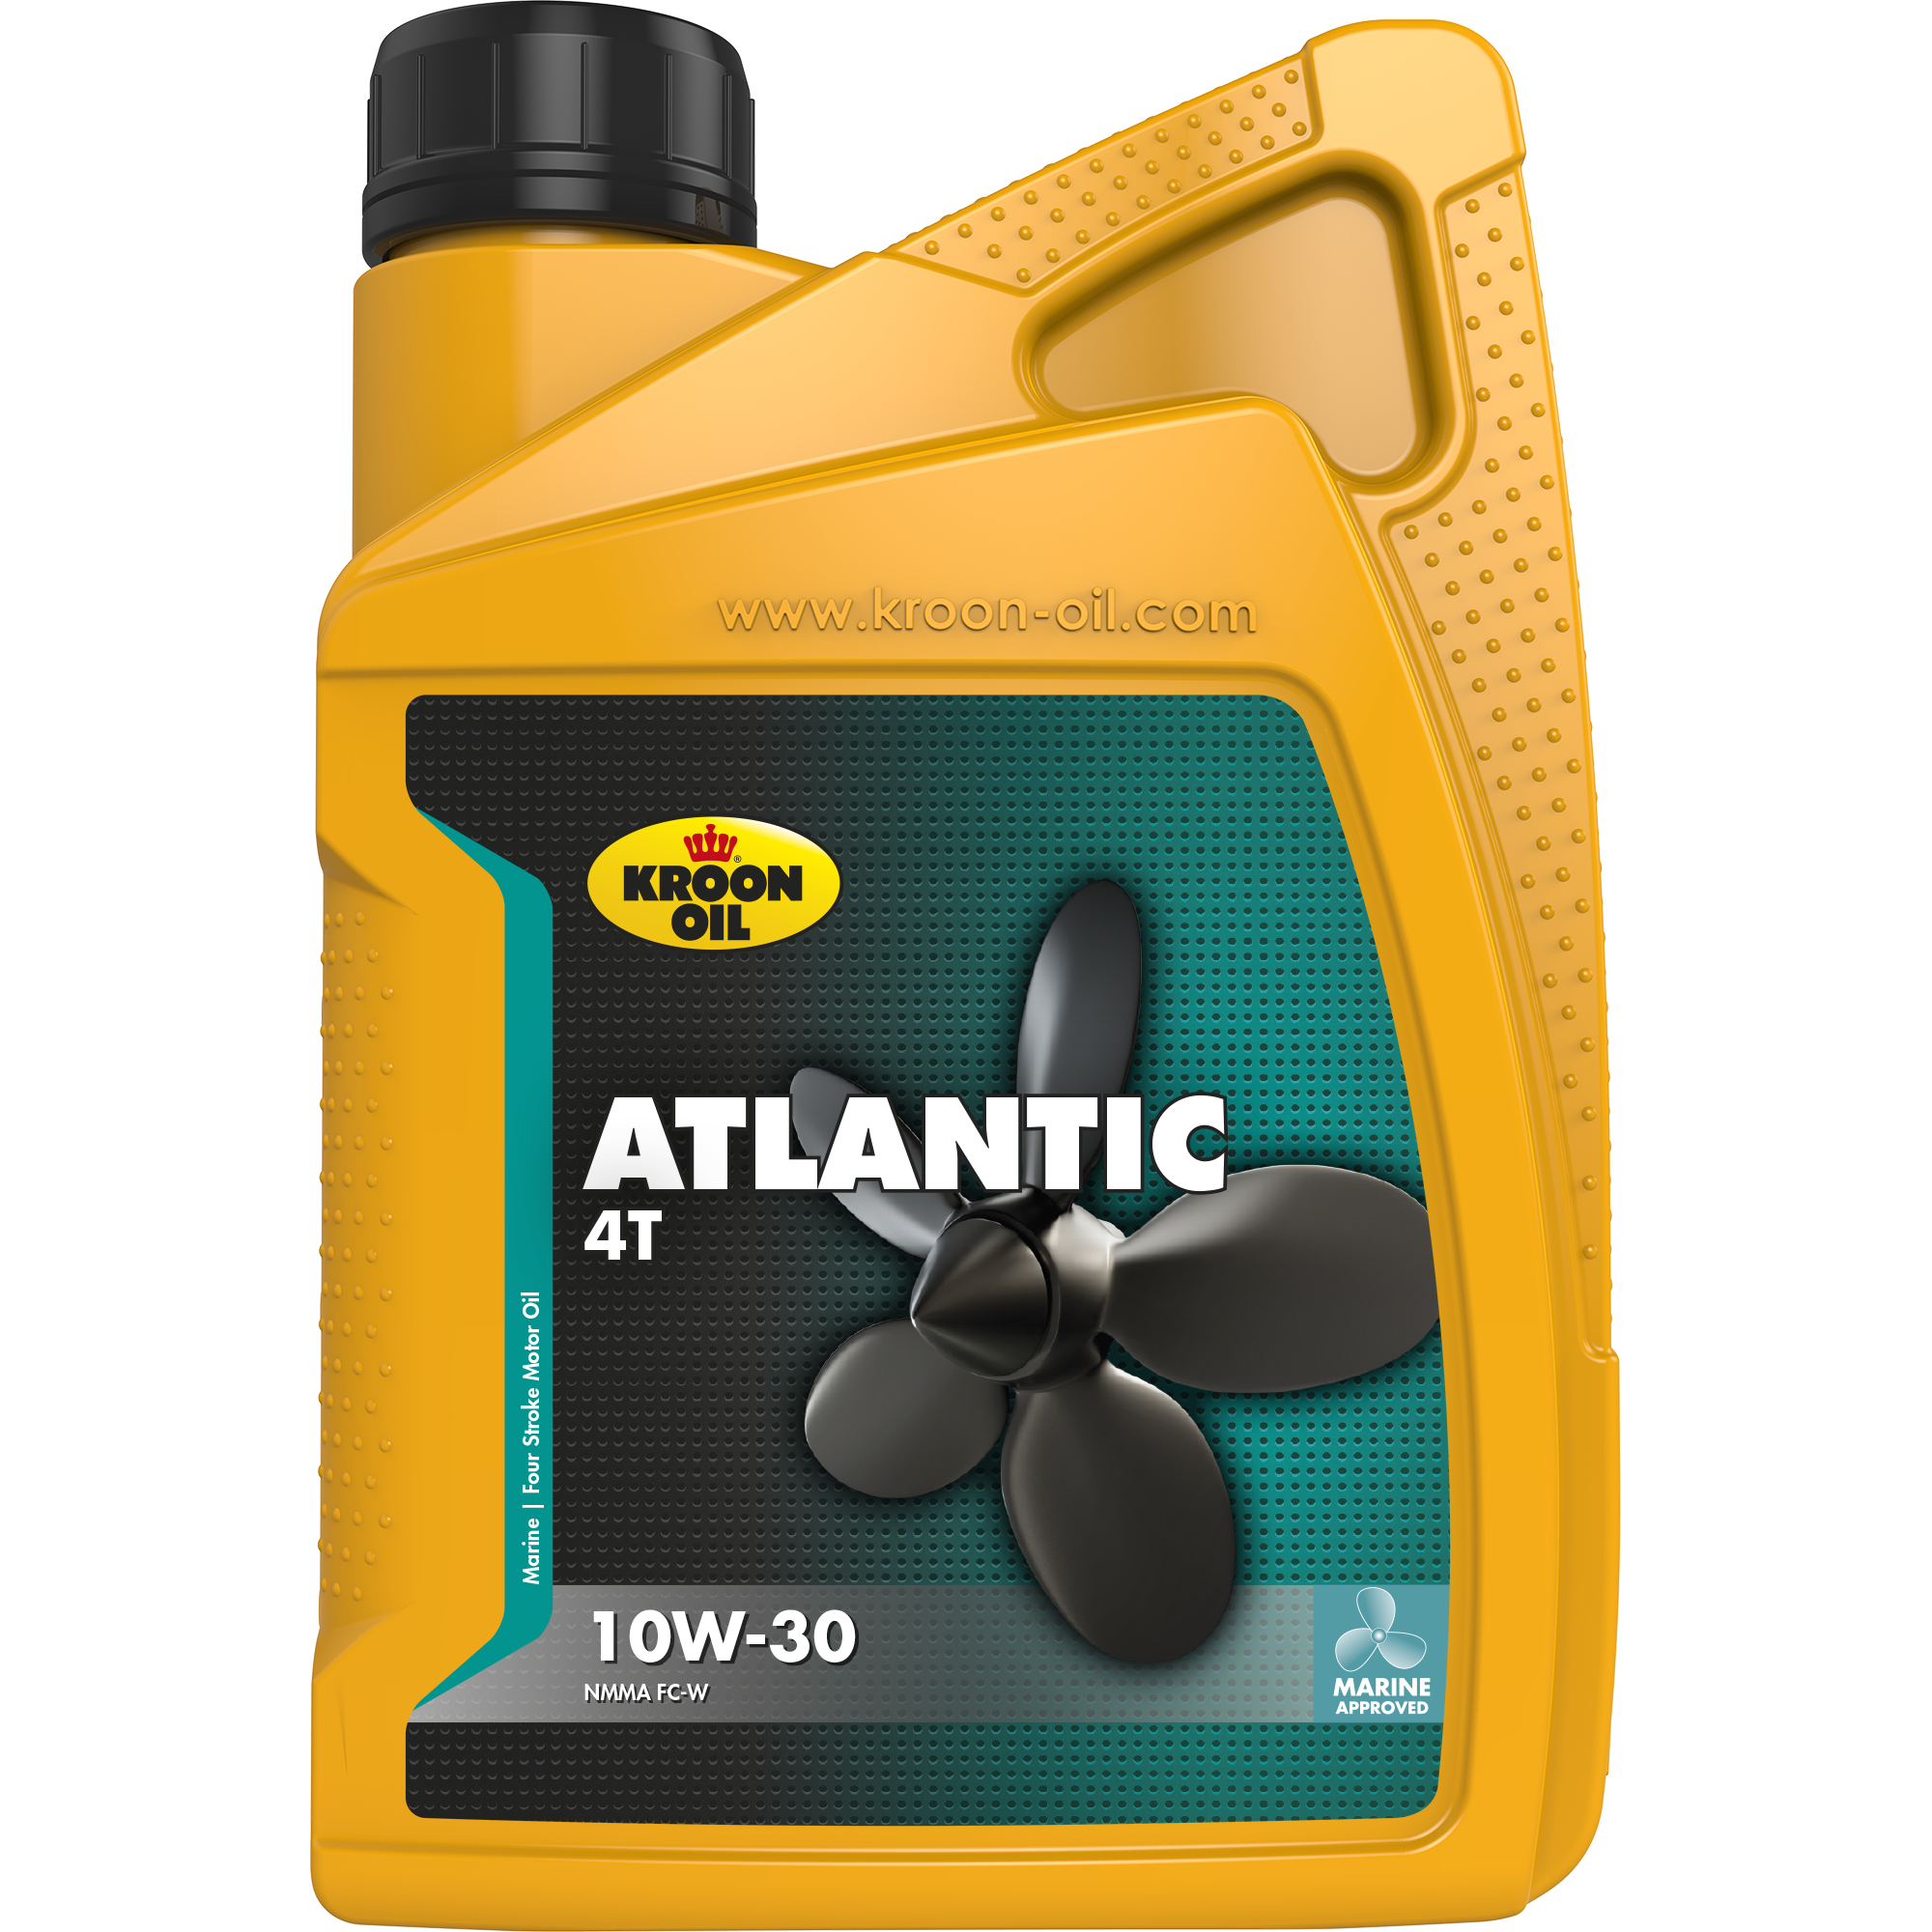 Kroon-Oil Atlantic 4T 10W-30, 1 lt